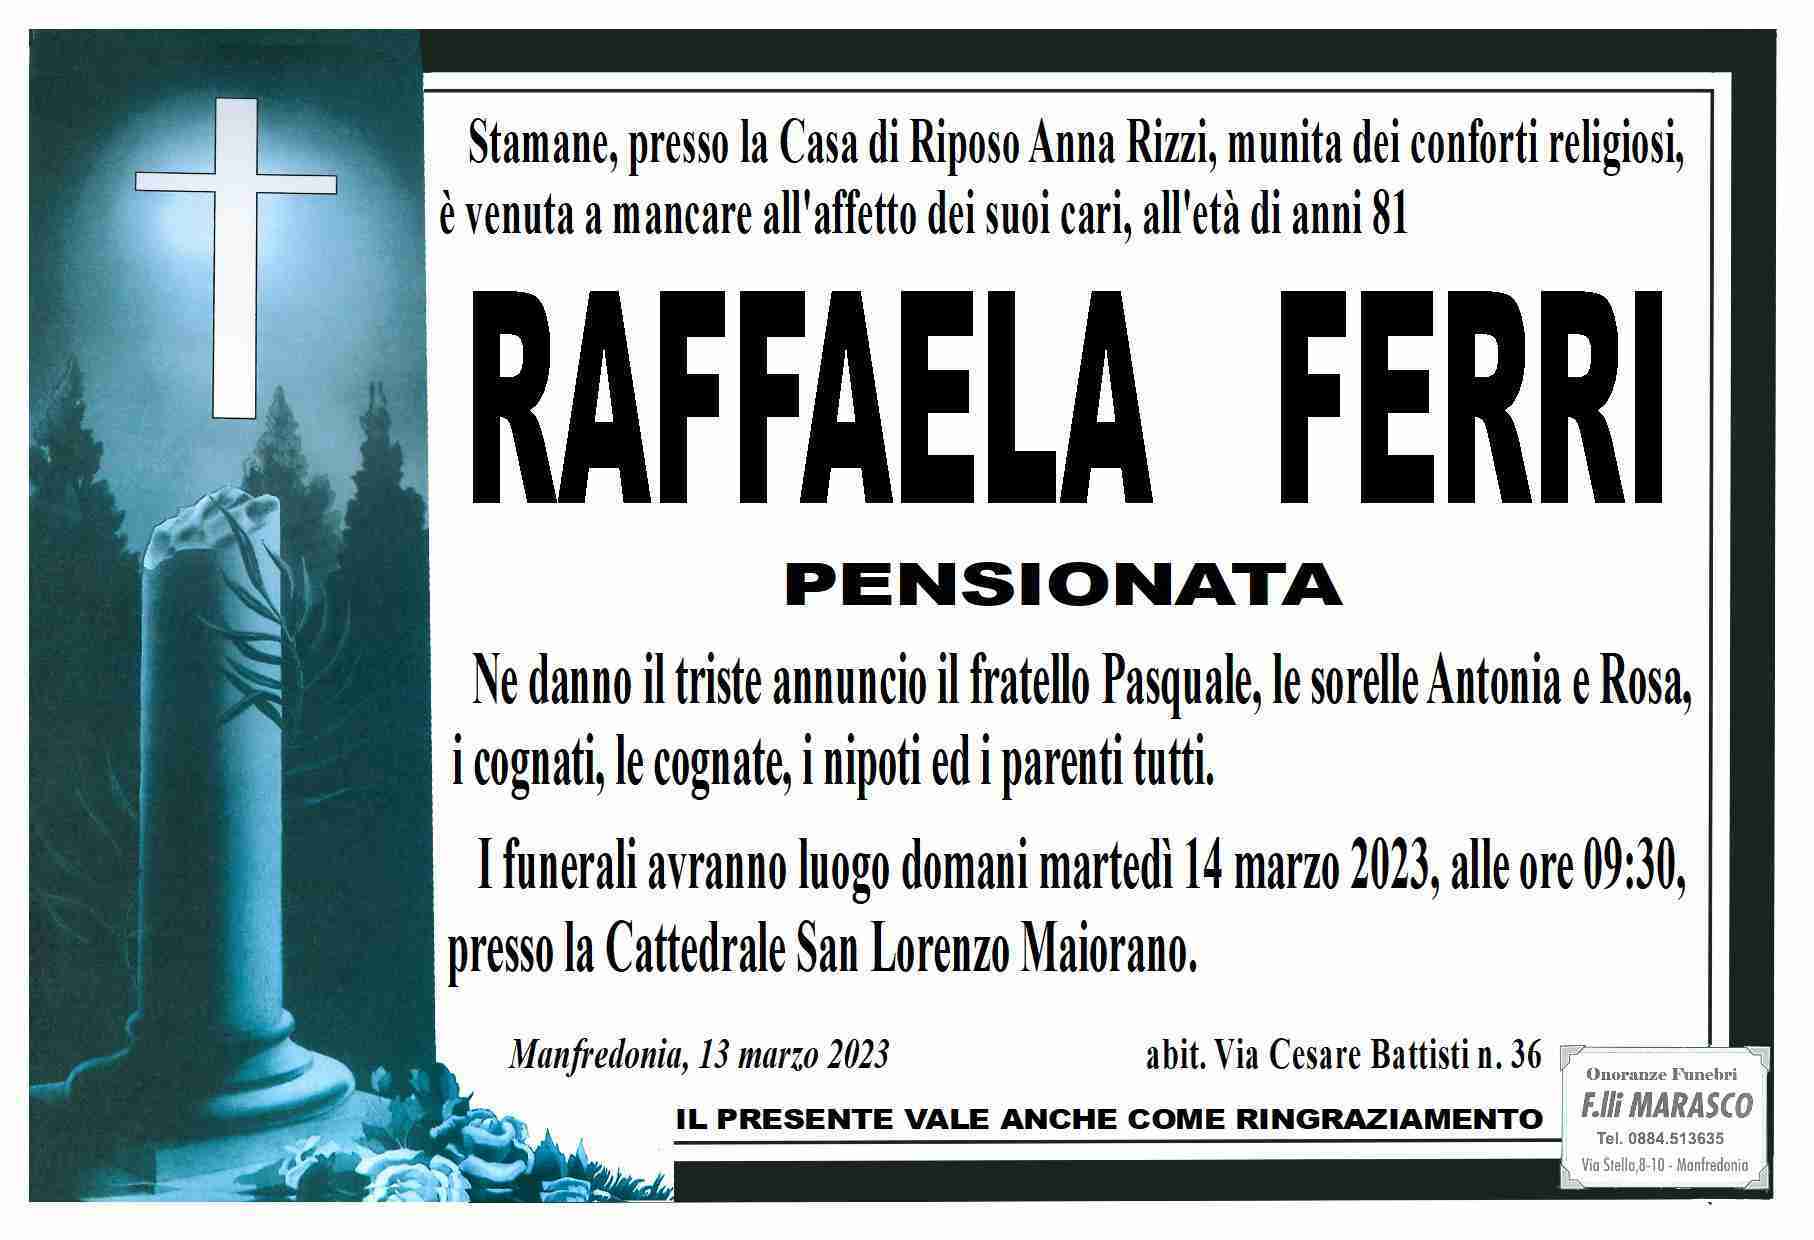 Raffaela Ferri